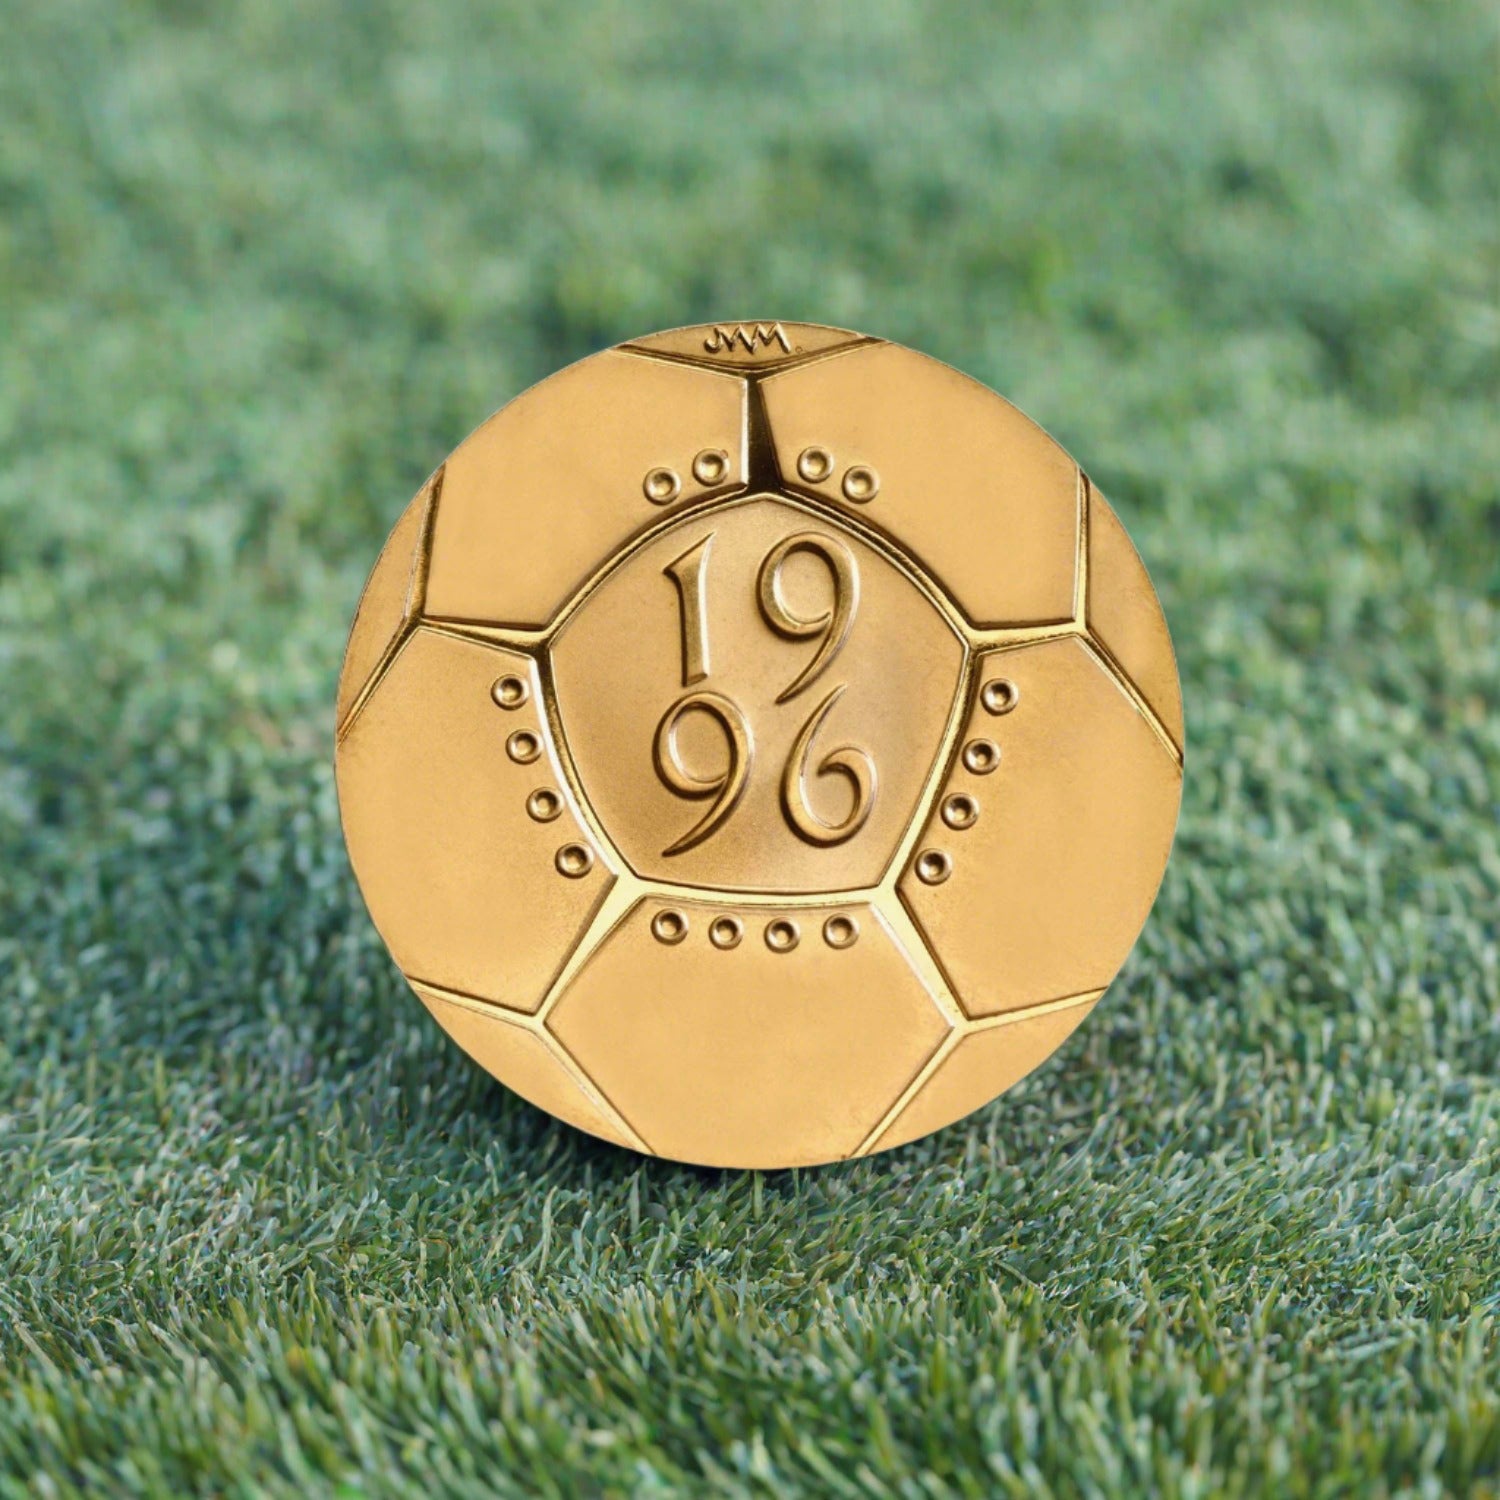 EURO '96 Célébration du football 1996 Royaume-Uni Pièce de 2 £